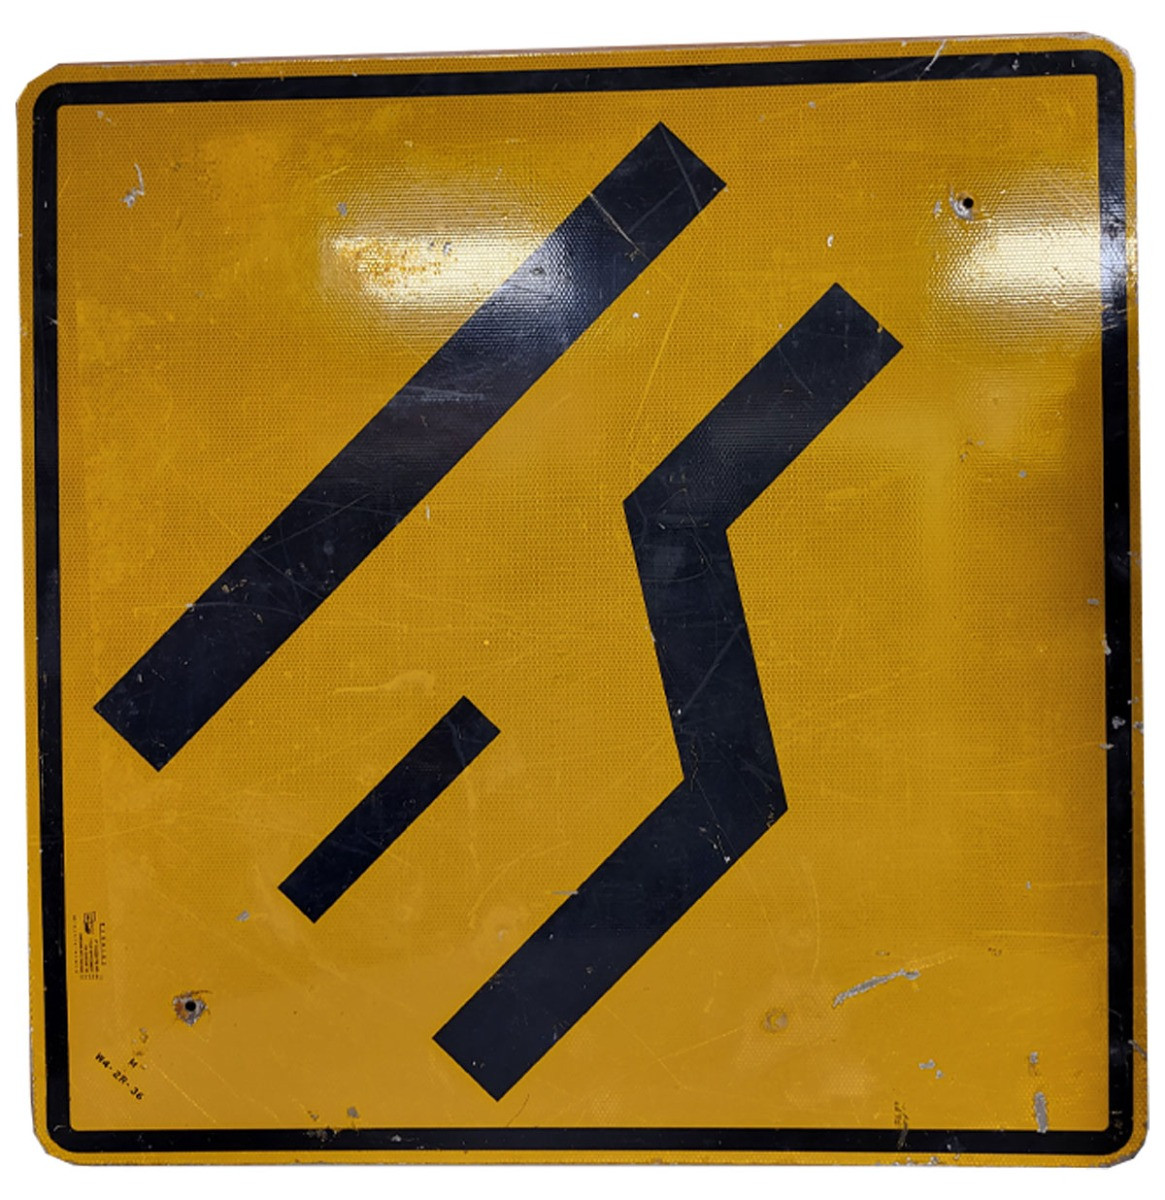 Lane Ends Merge Left Metalen Straatbord - Origineel - 92 x 92 cm